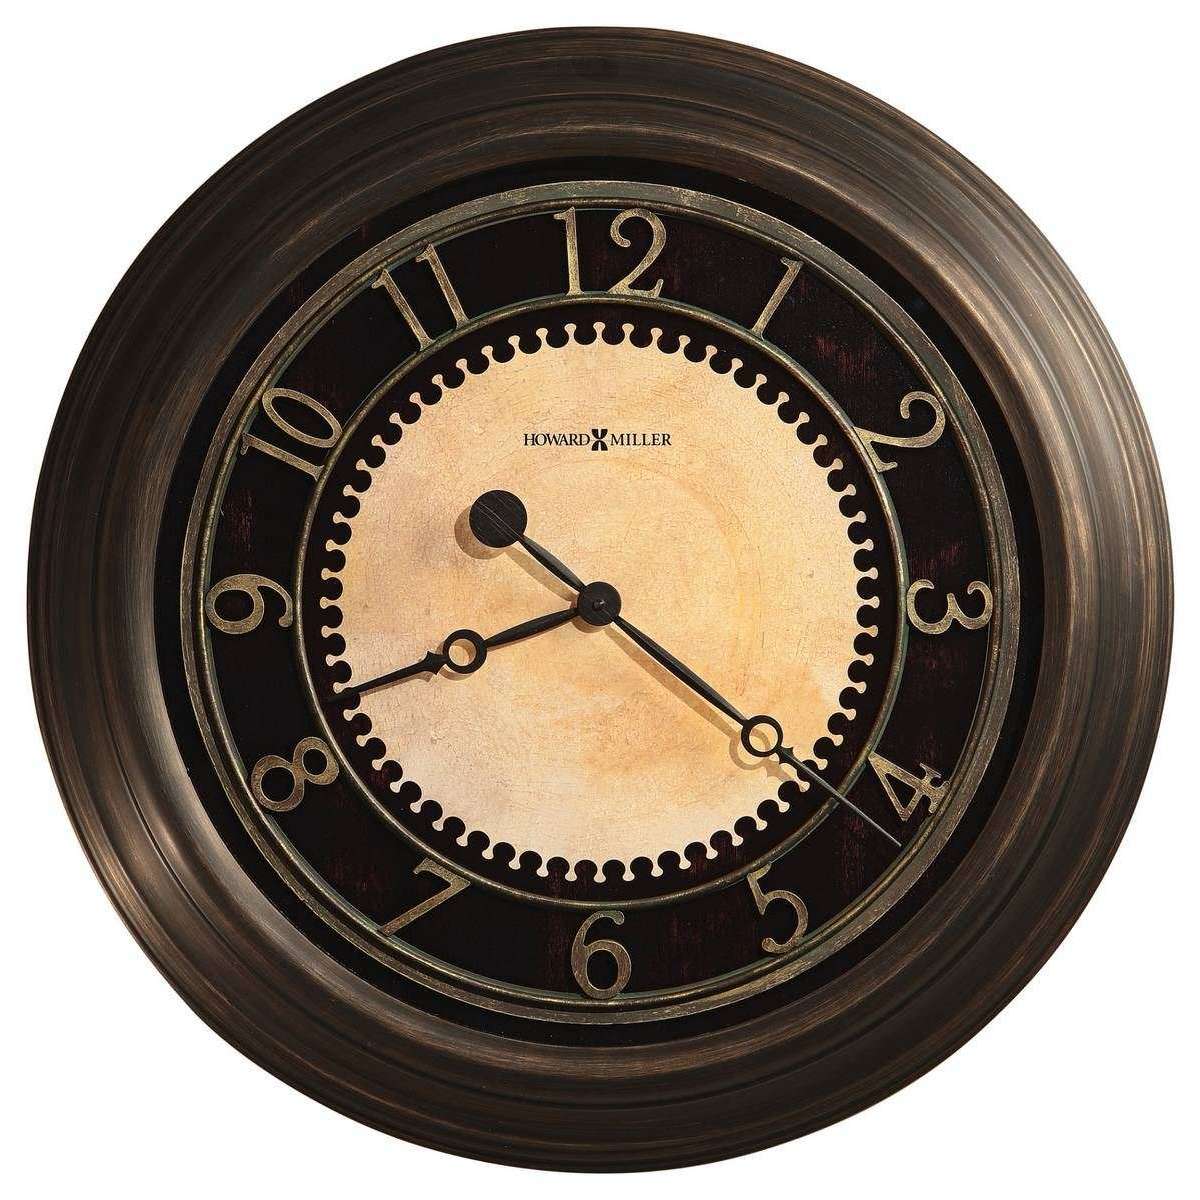 Howard Miller Chadwick Wall Clock - Brass Bronze